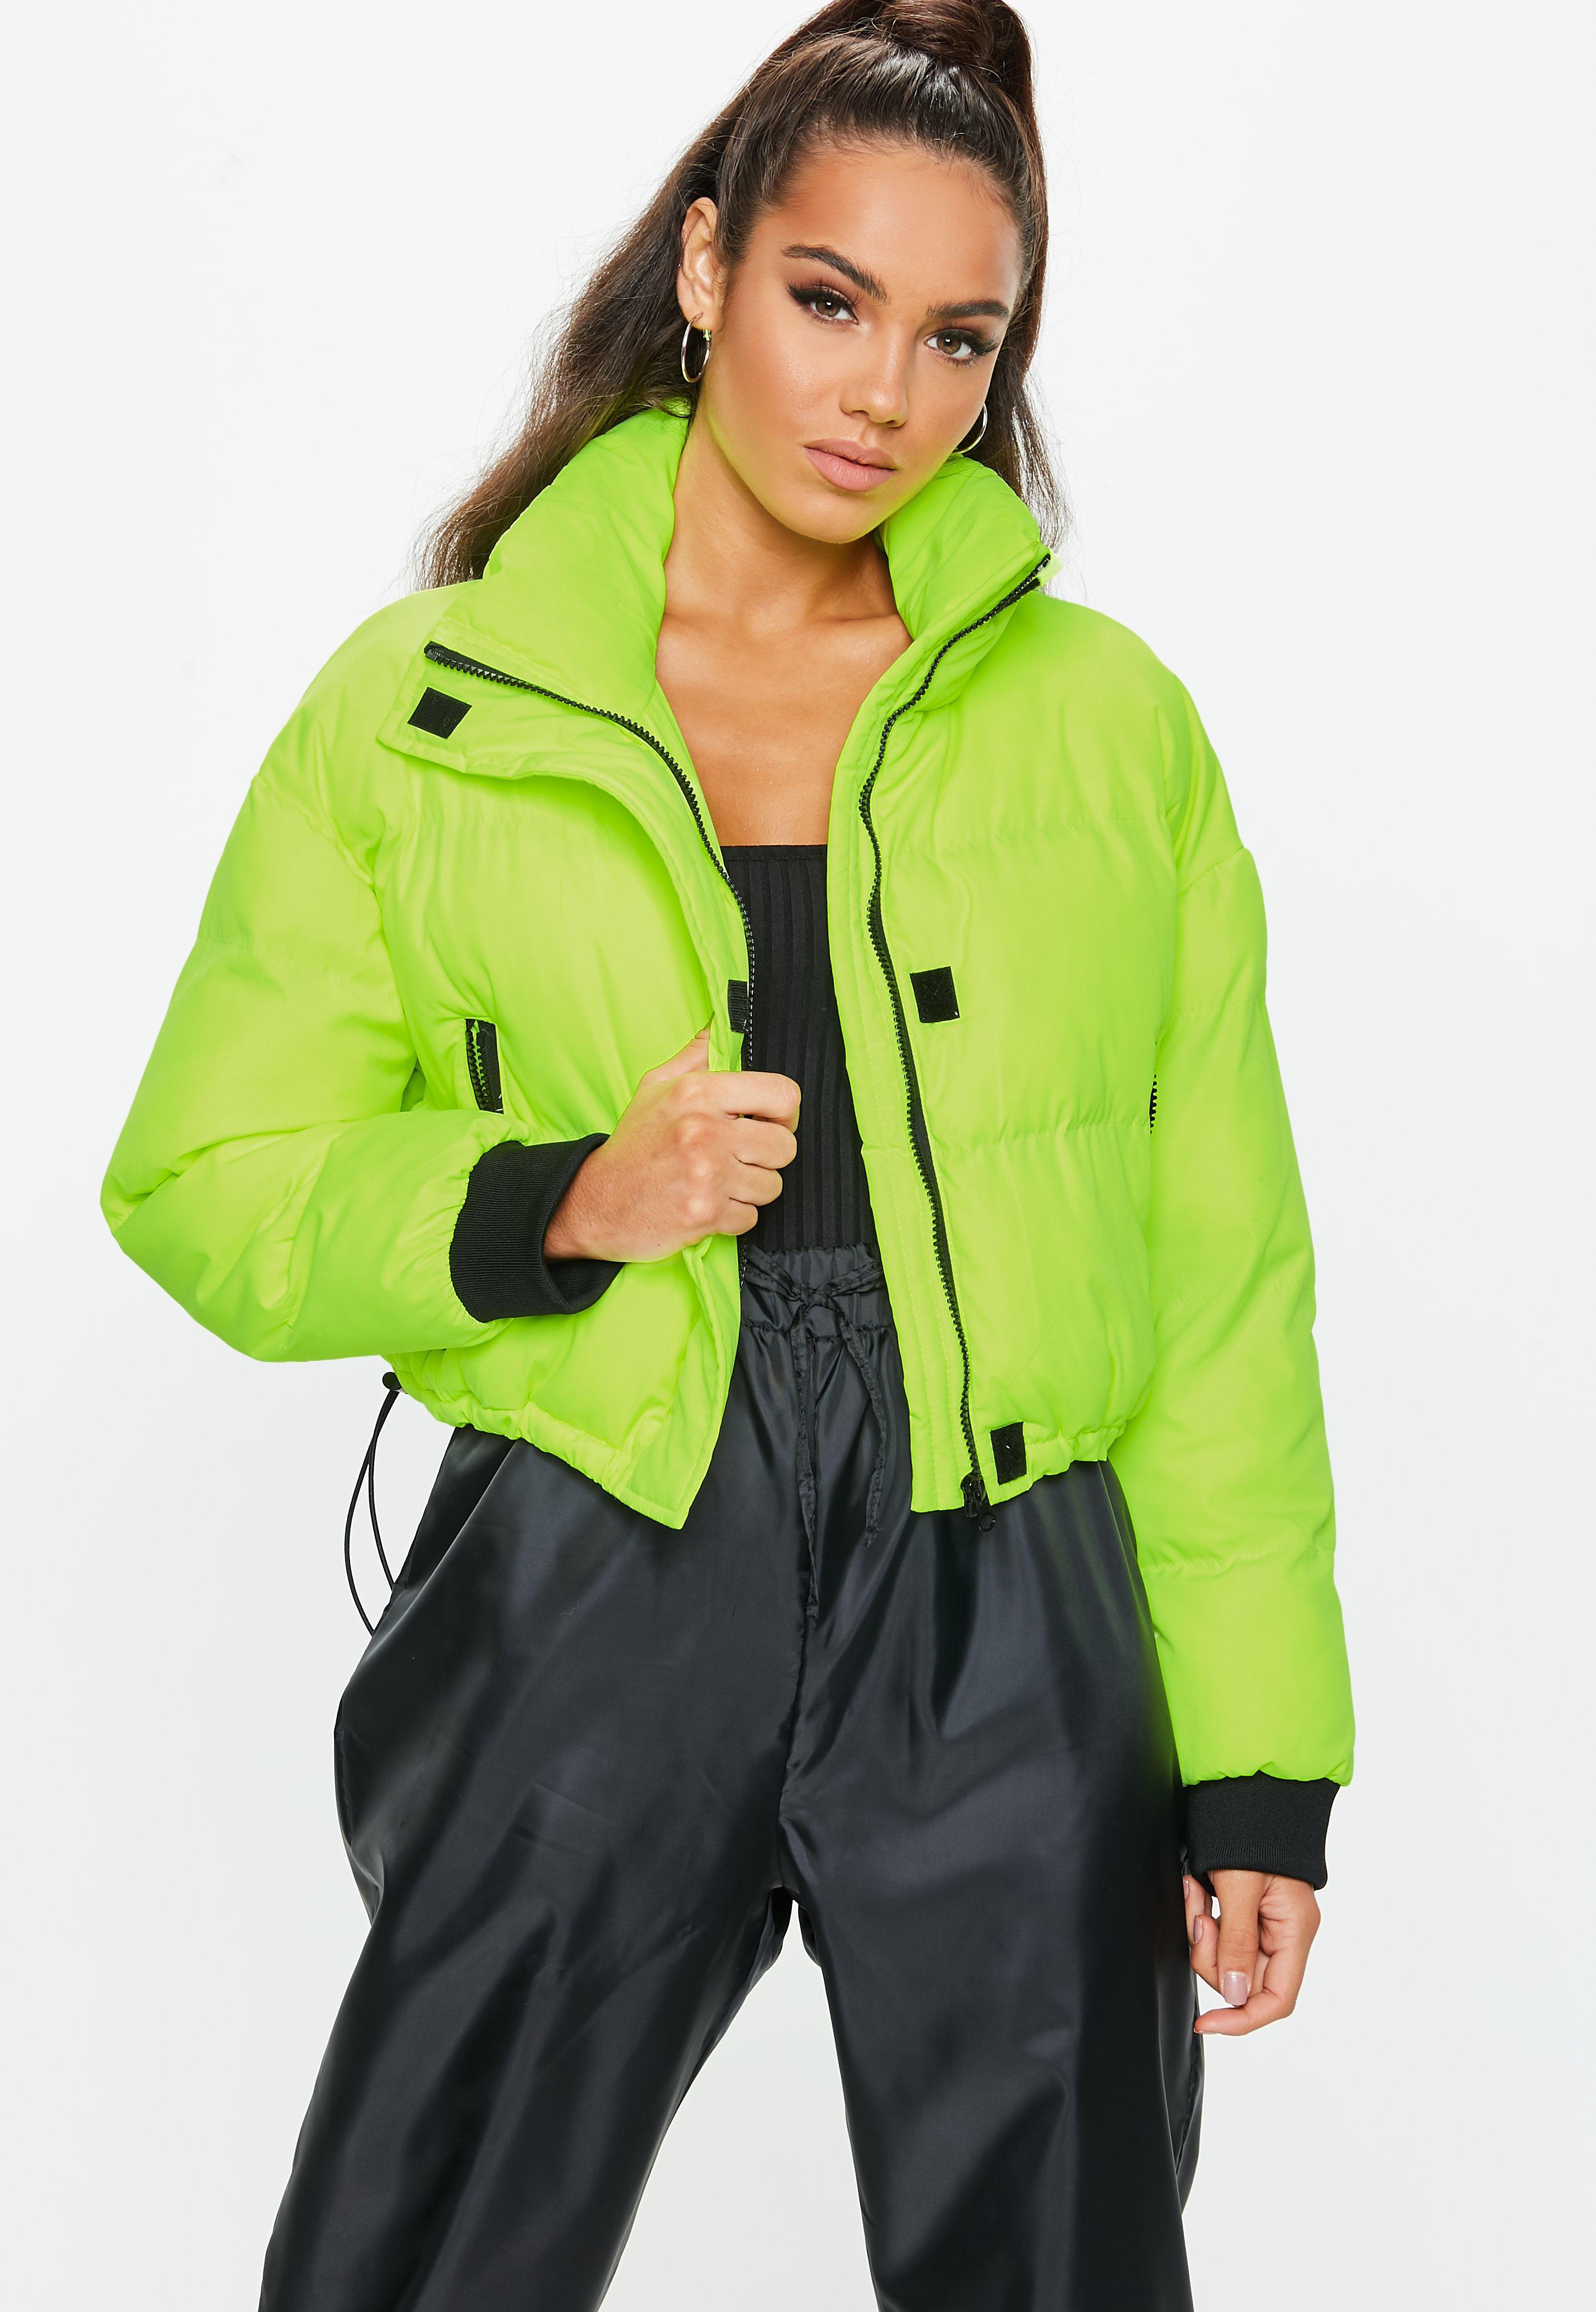 Неоновая куртка. Куртка мужская Neon Lime. Ярко зеленая куртка женская. Неоновая зеленая куртка женская. Салатовая куртка неоновая.